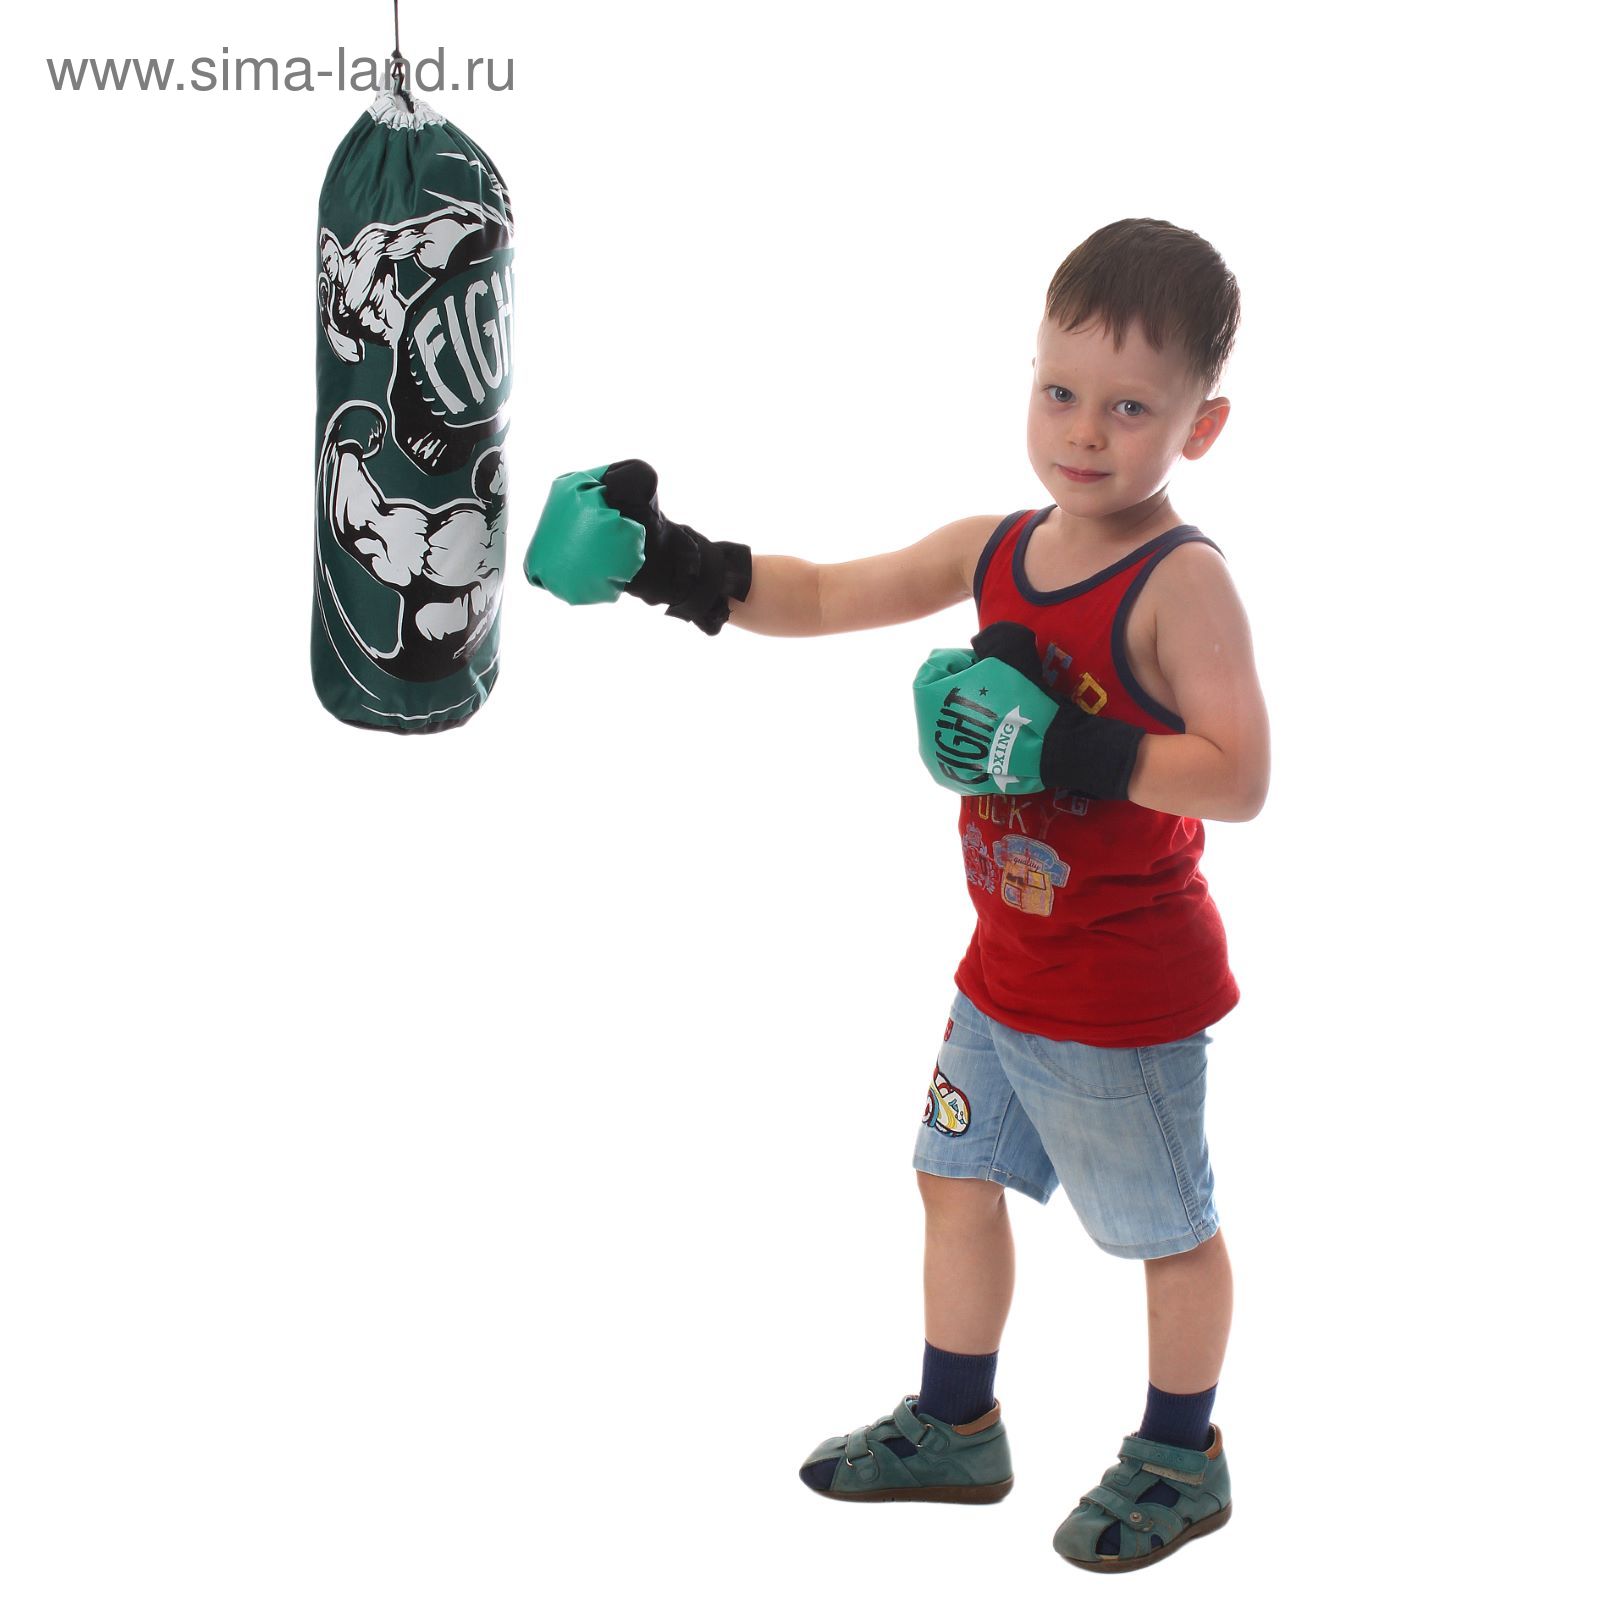 Бокс детский игра. Груша боксерская файт. Игровой набор бокс bb136. Детские груши для бокса. Комплект для бокса детский груша.